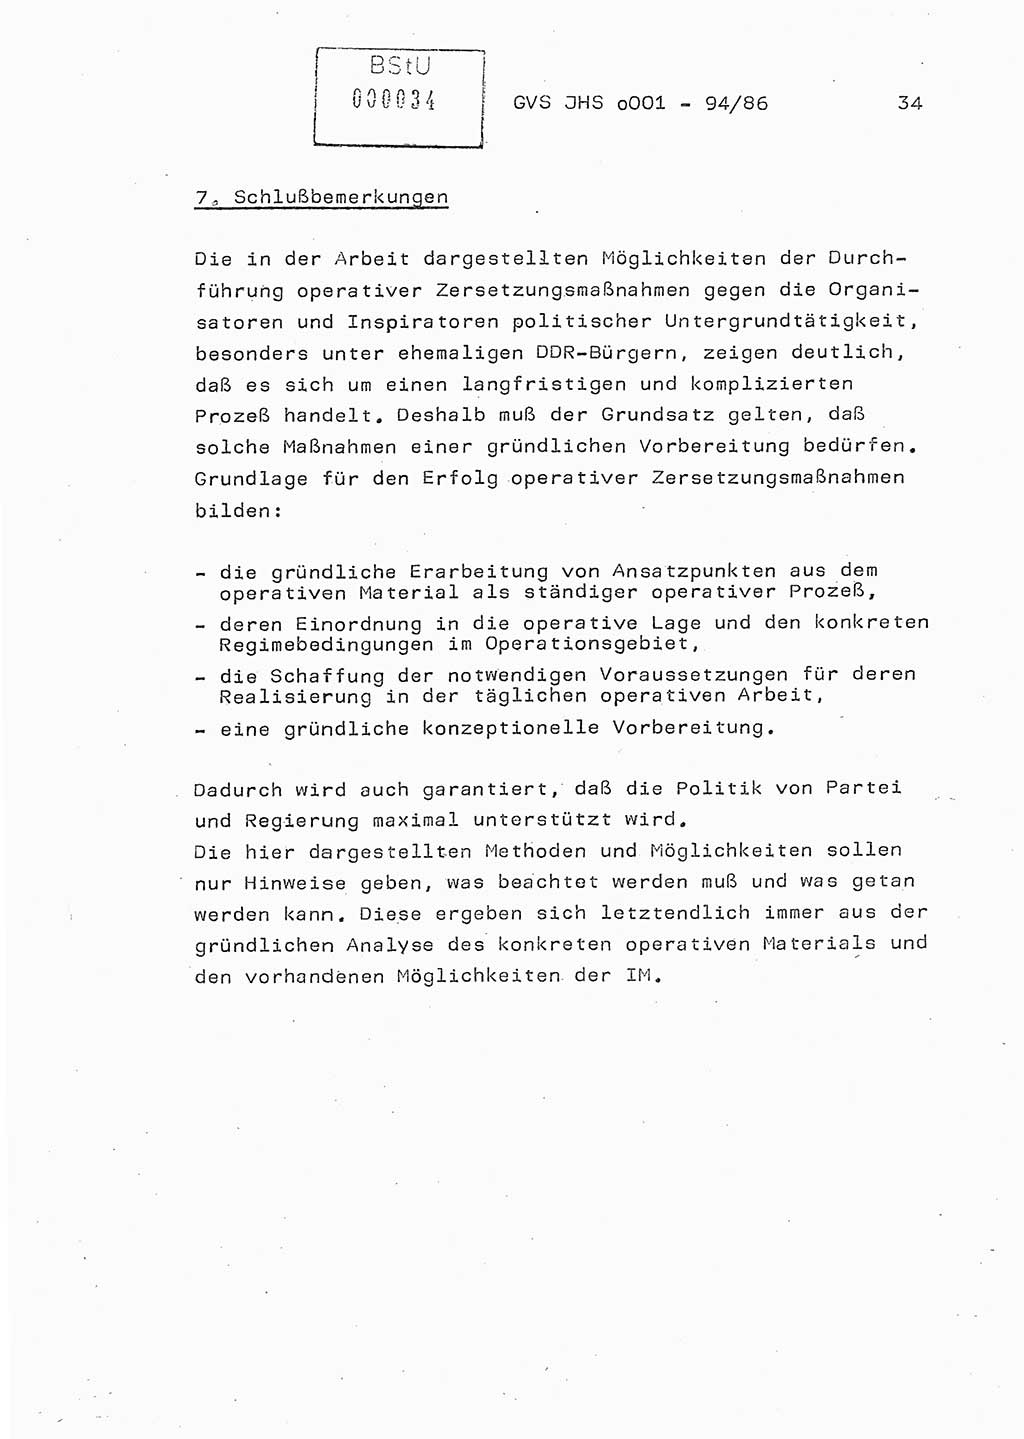 Diplomarbeit Oberleutnant Volkmar Pechmann (HA ⅩⅩ/5), Ministerium für Staatssicherheit (MfS) [Deutsche Demokratische Republik (DDR)], Juristische Hochschule (JHS), Geheime Verschlußsache (GVS) o001-94/86, Potsdam 1986, Blatt 34 (Dipl.-Arb. MfS DDR JHS GVS o001-94/86 1986, Bl. 34)